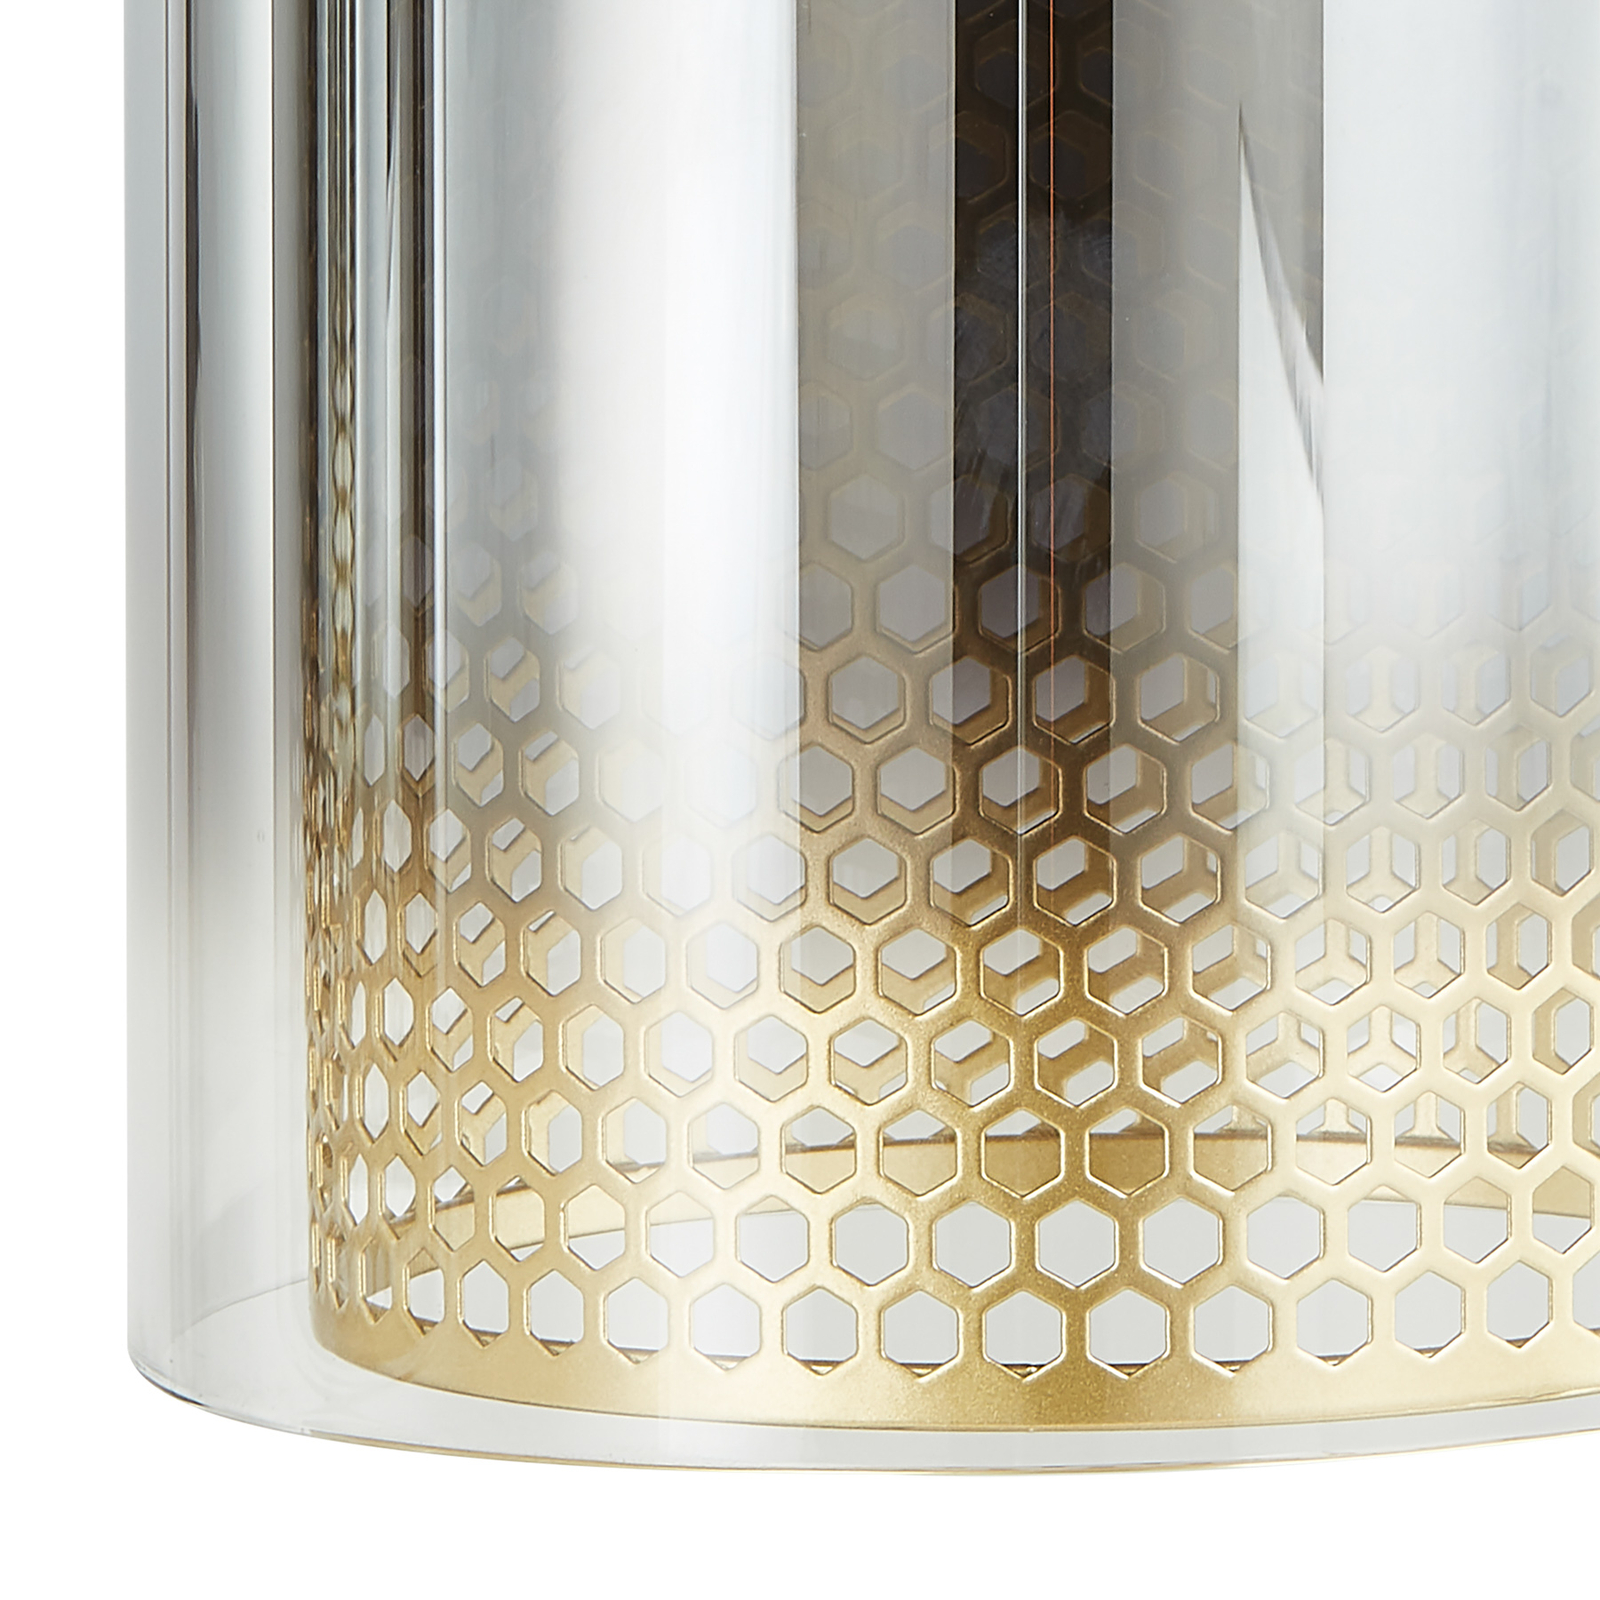 Lucande hanglamp Sterzy, Ø 15 cm, grijs, glas, E27